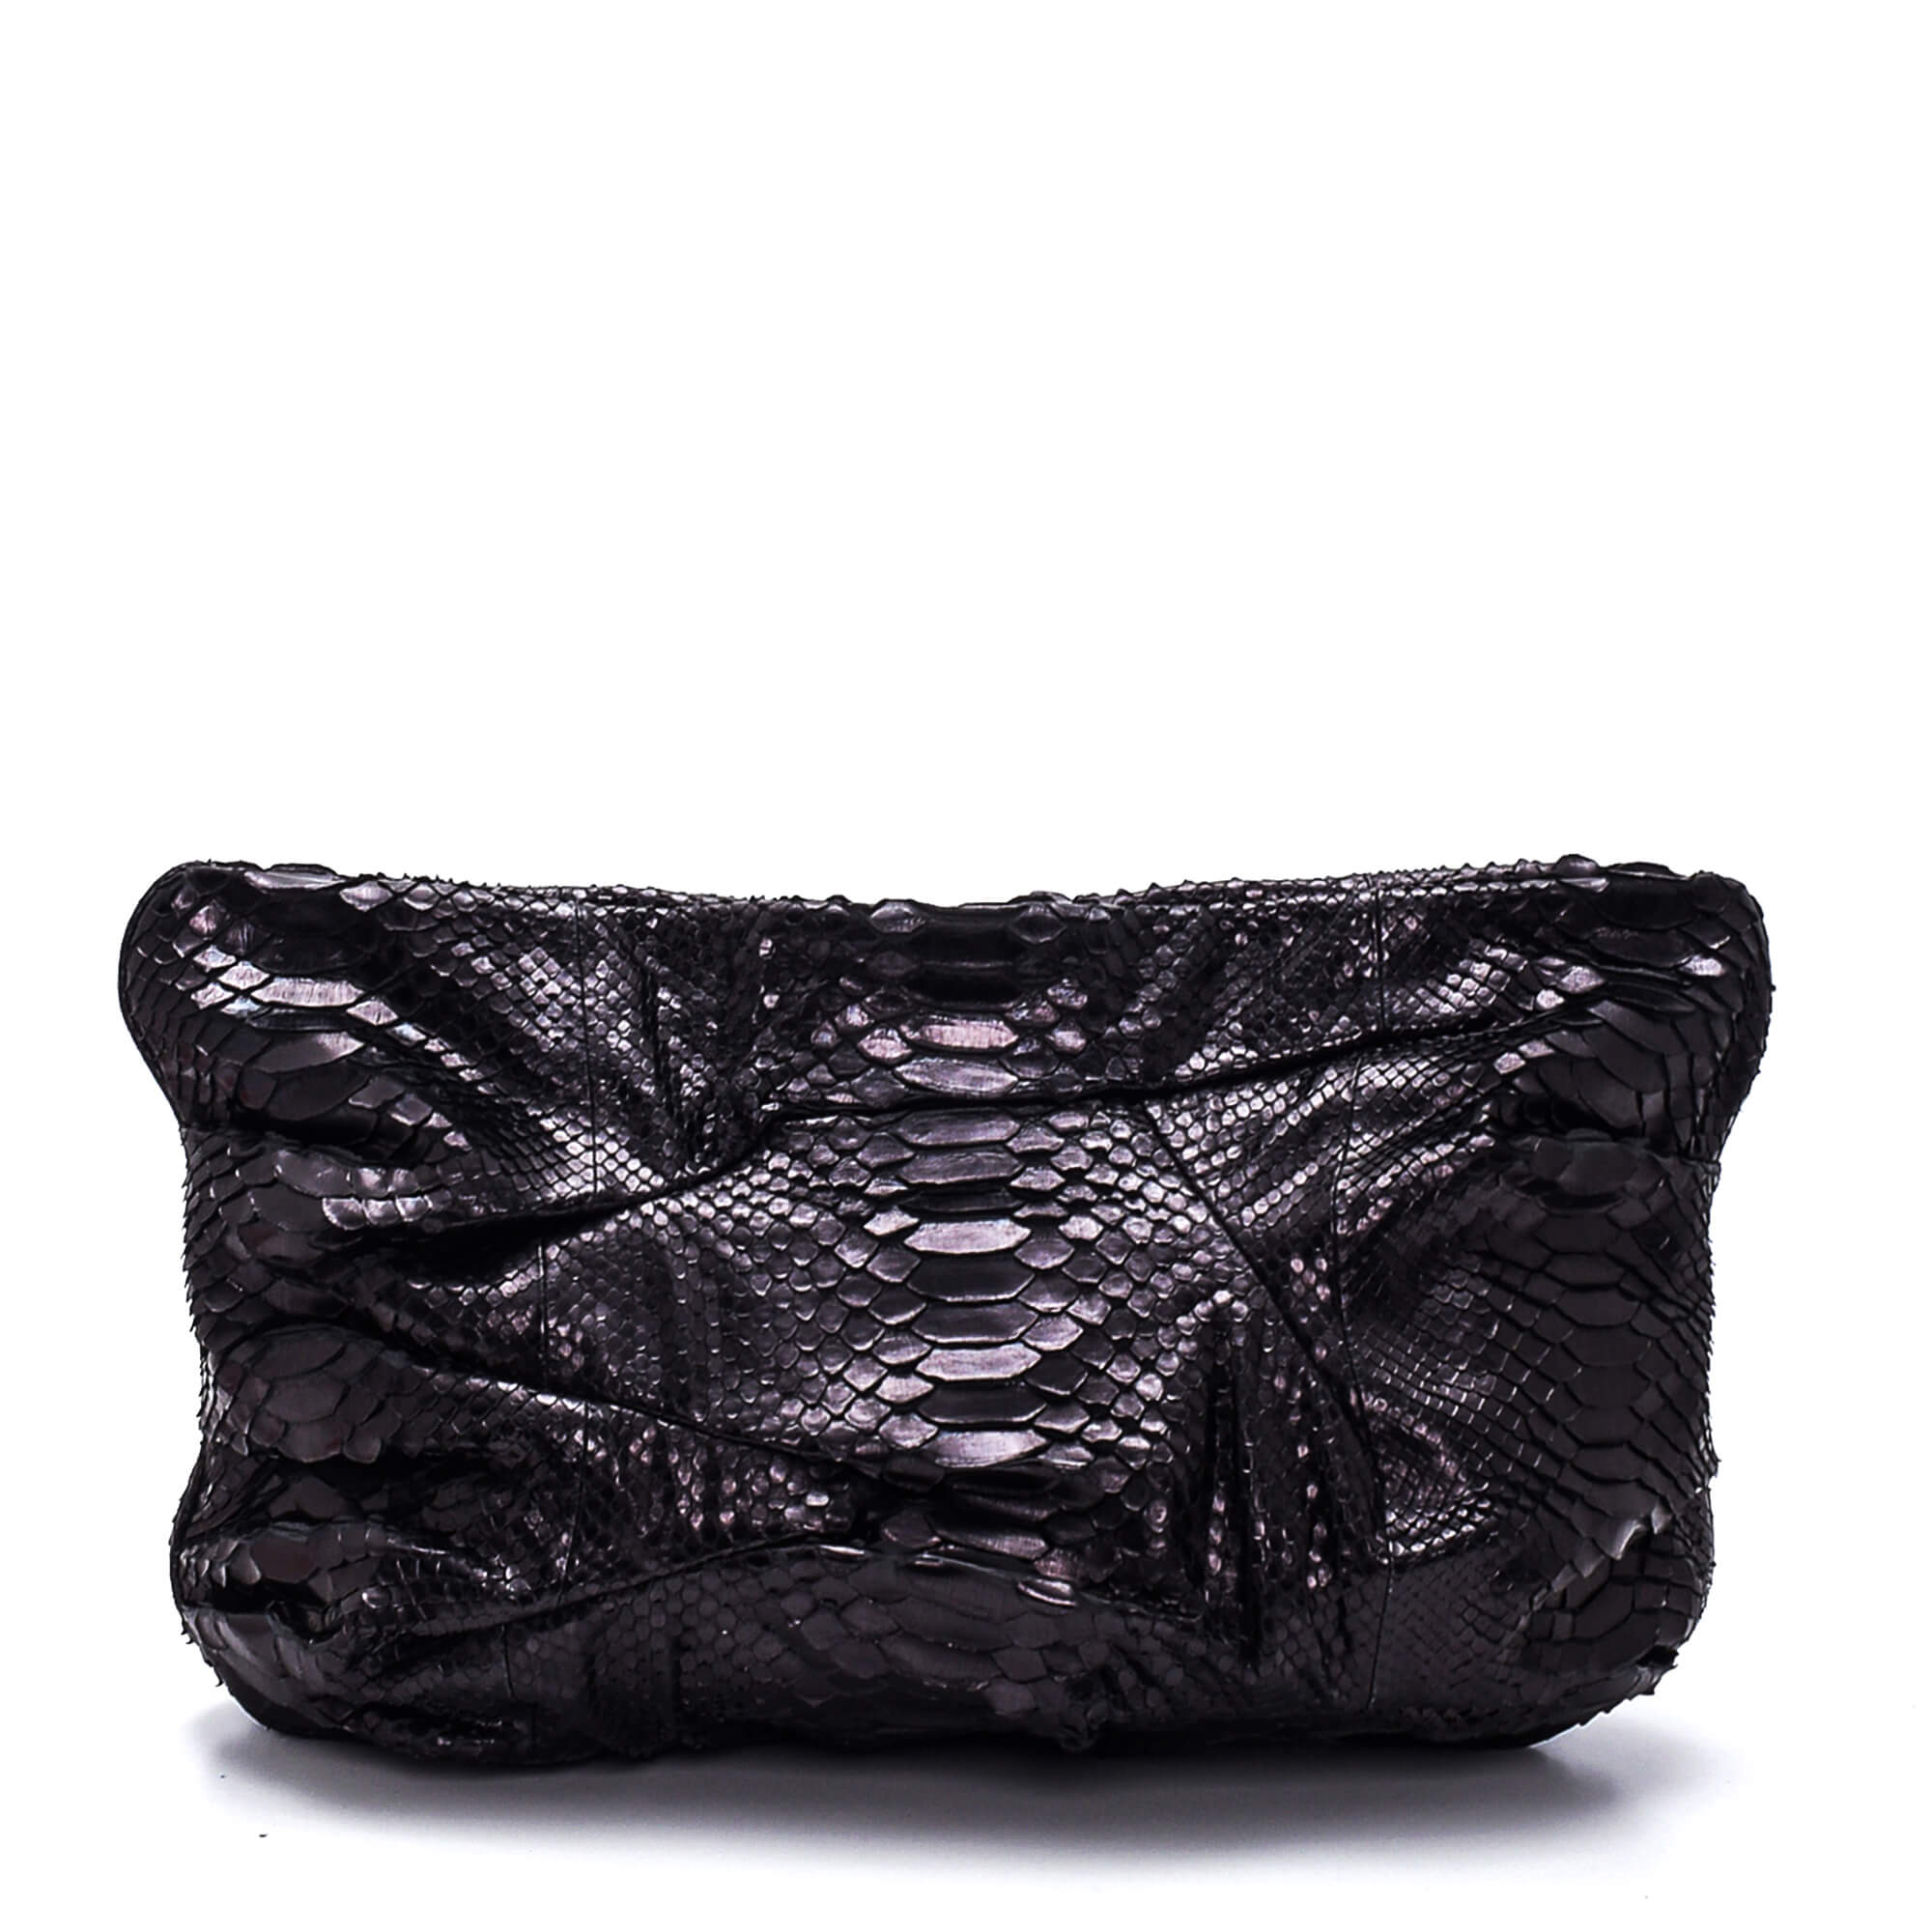 Zagliani - Black Leather Oversized Clutch 